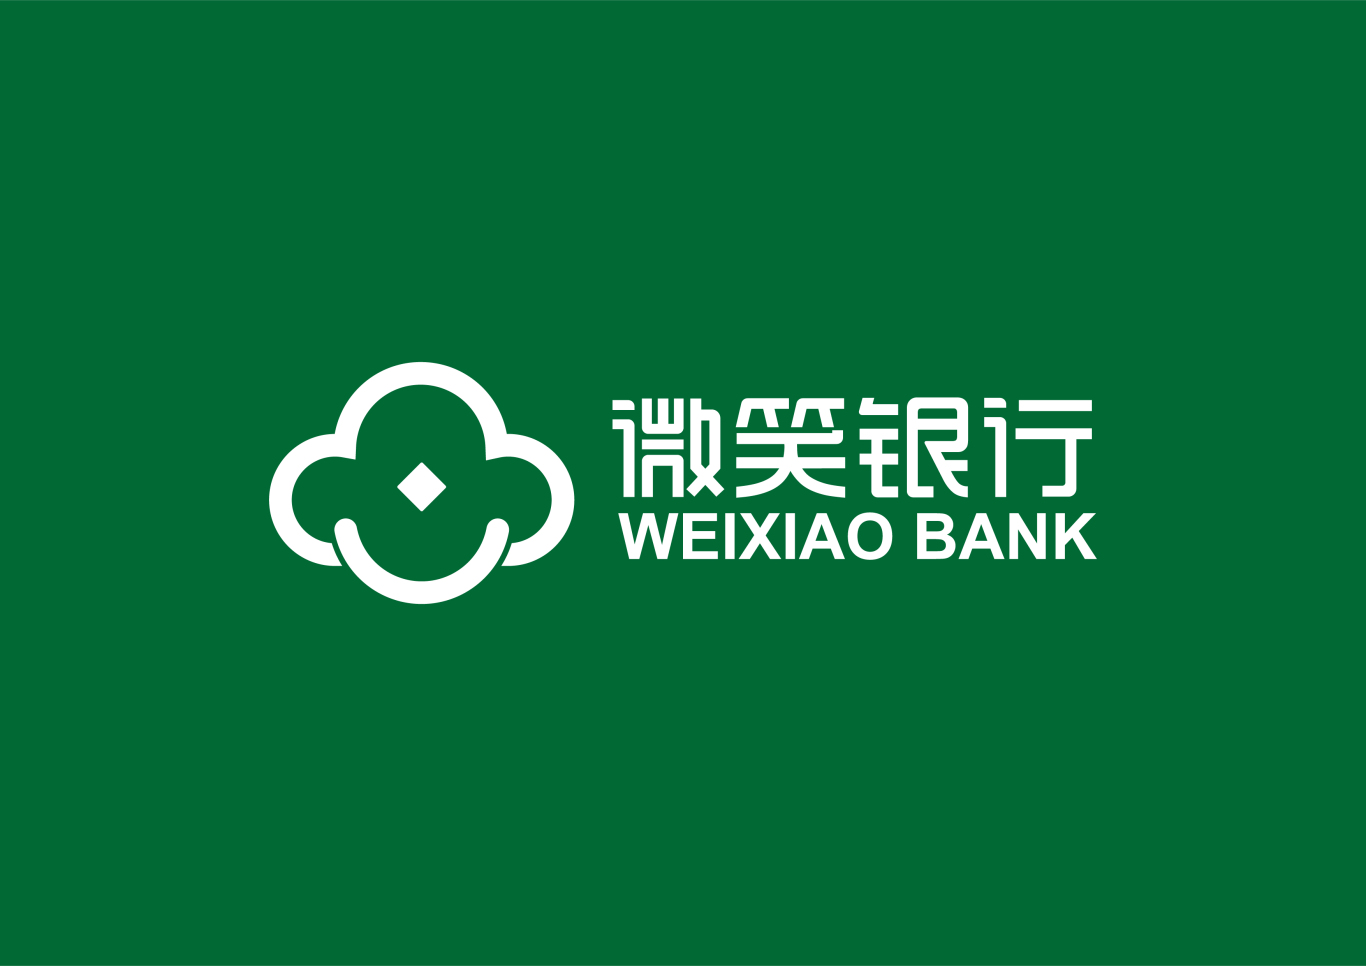 山西兴县农村商业银行 下属支行 品牌logo设计图1